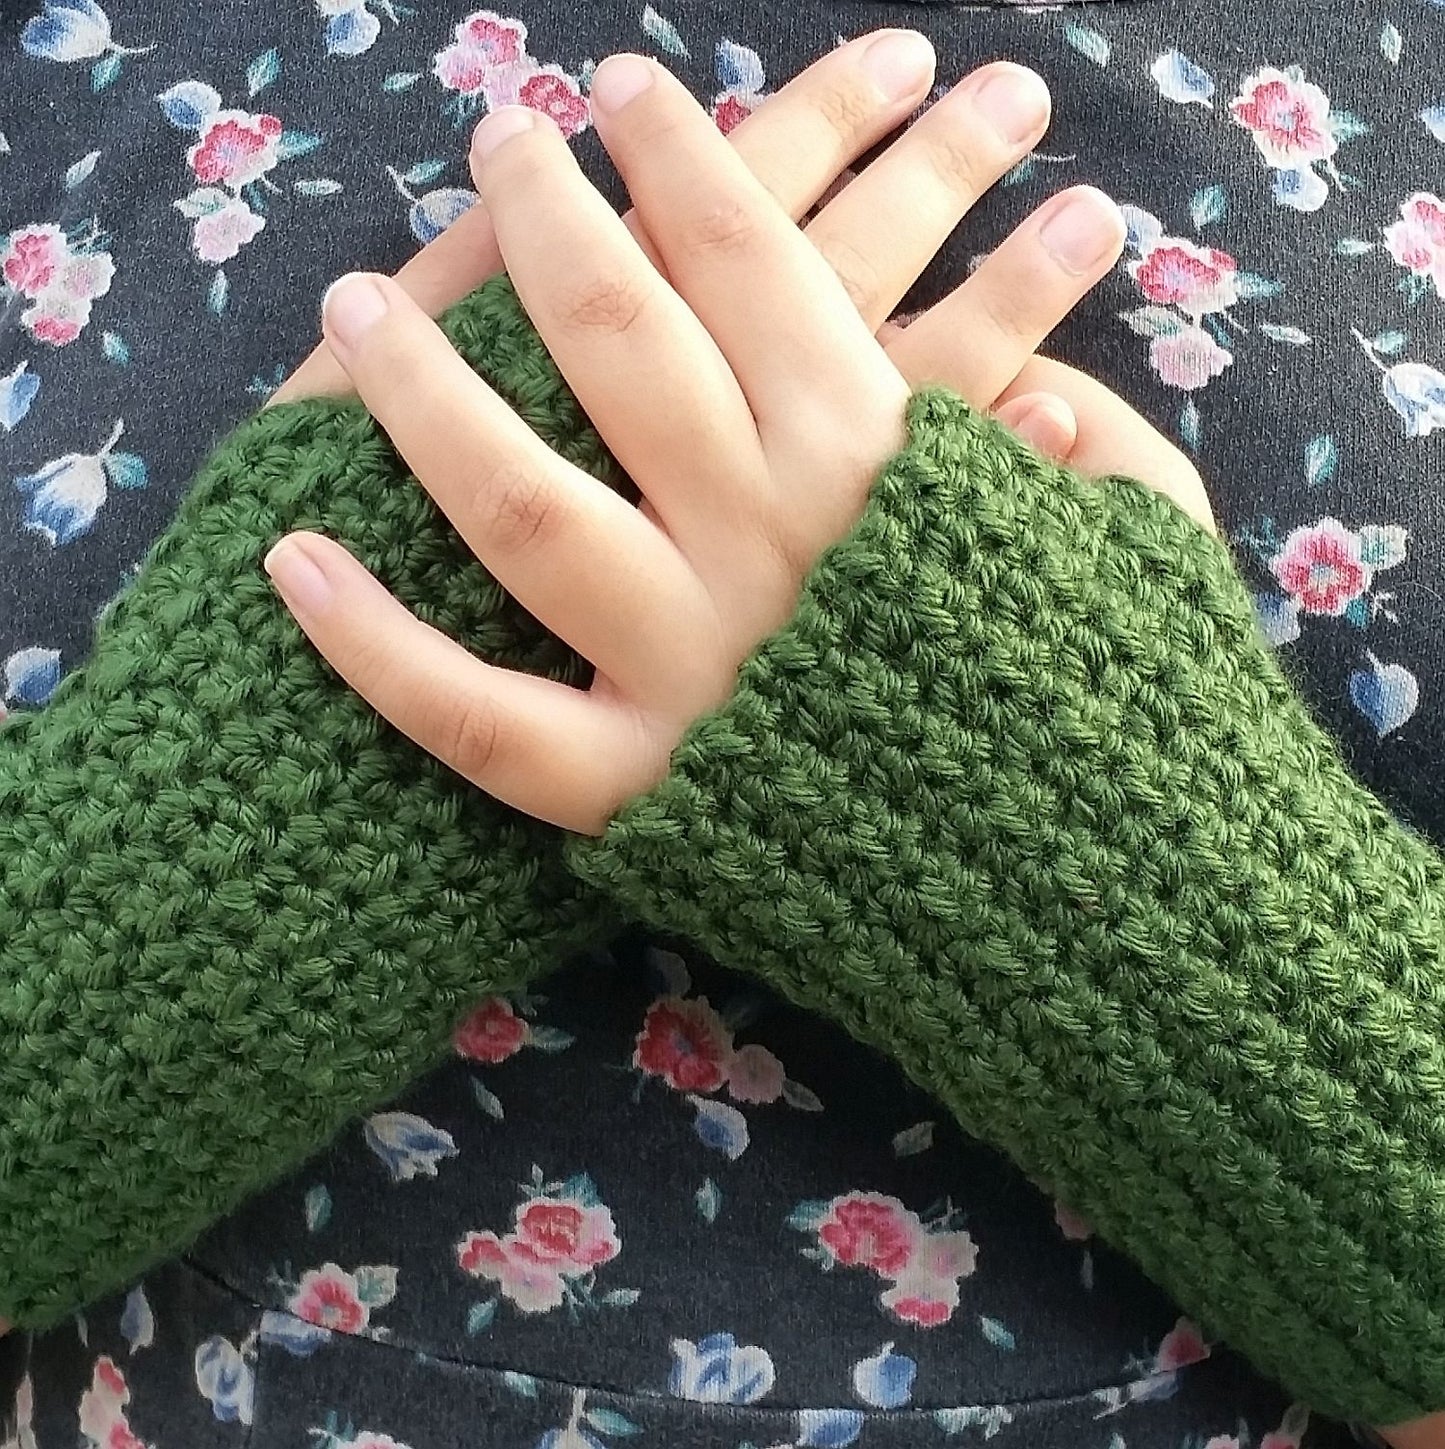 Textured Fingerless Gloves Crochet Pattern PDF